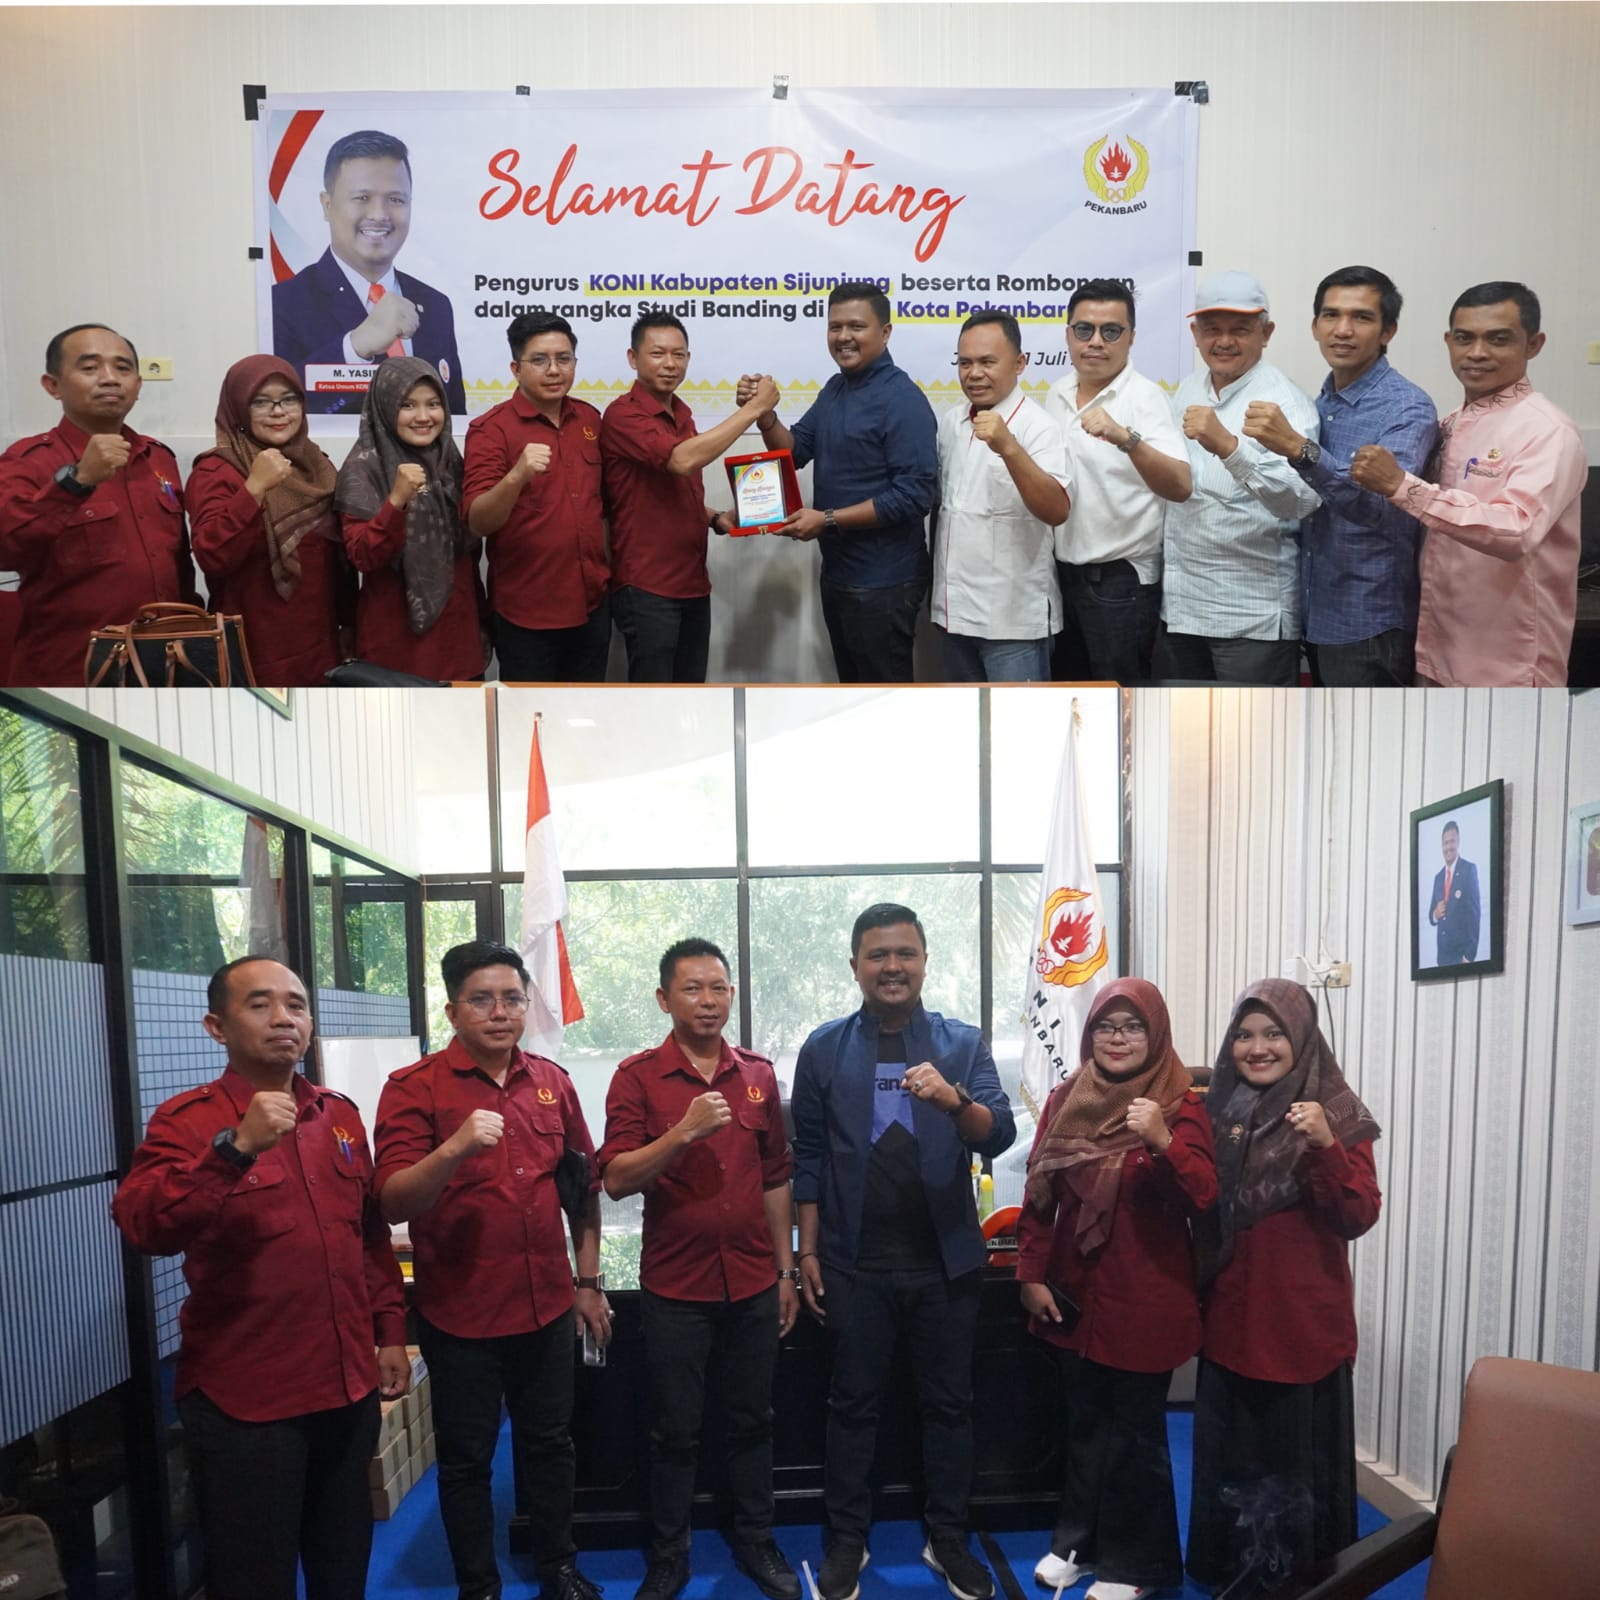 Belajar Pembinaan Atlet Berprestasi, KONI Sijunjung Studi Banding di KONI Kota Pekanbaru